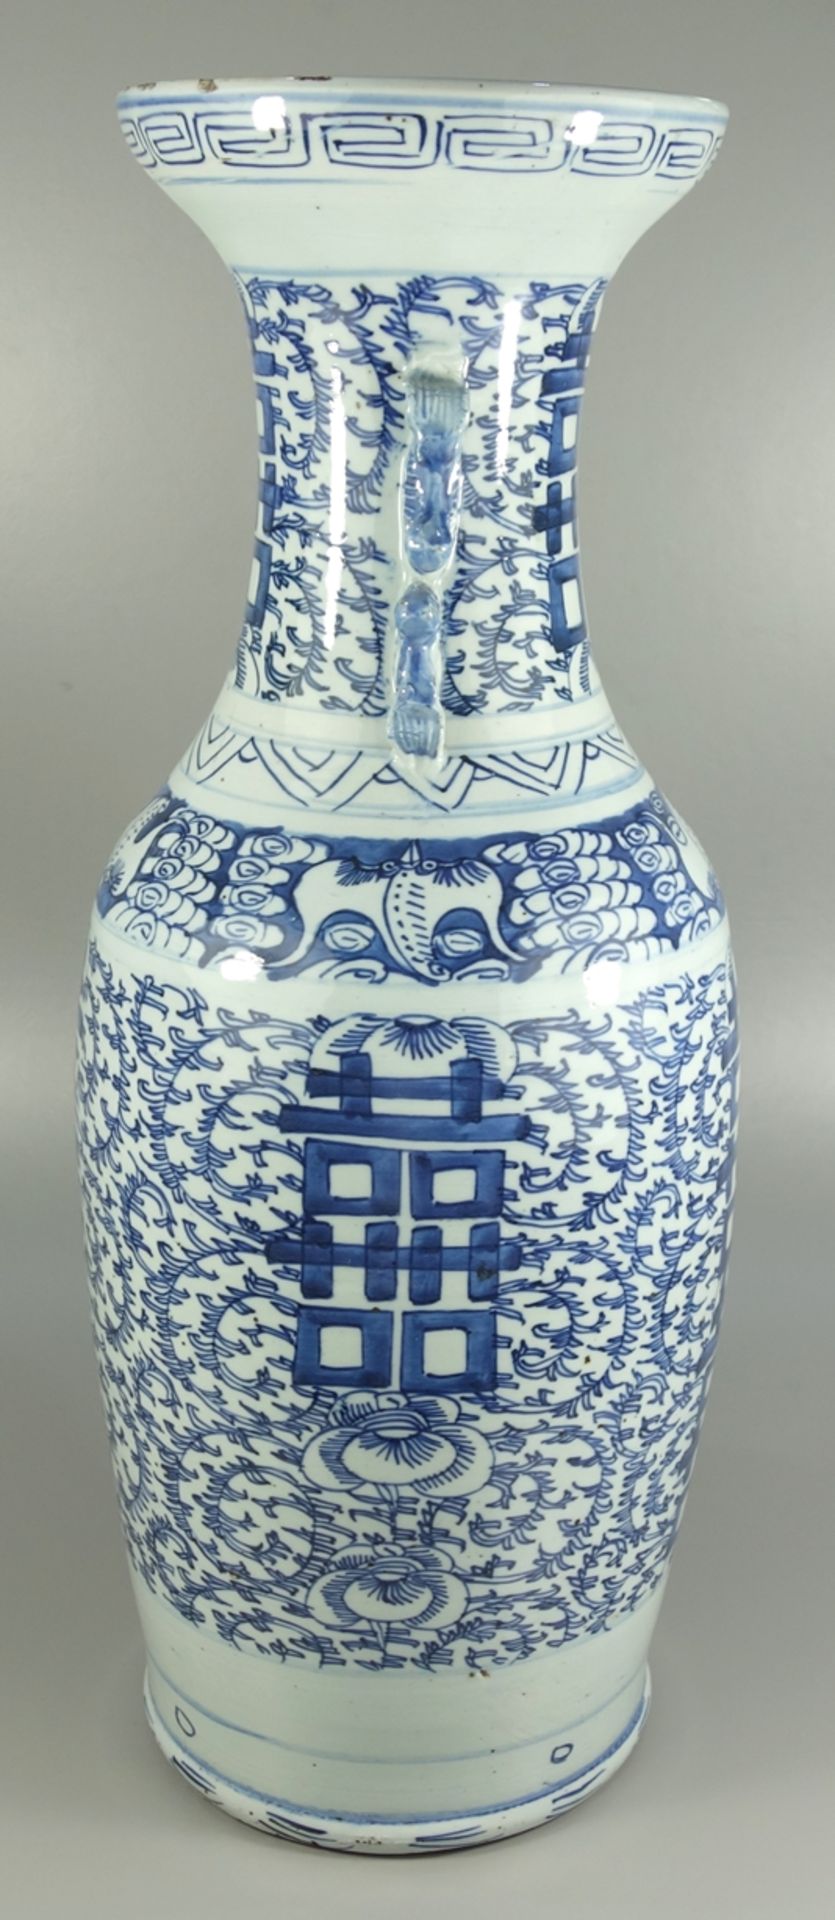 Bodenvase "Doppelglück", China, Qing-Dynasty, Bemalung in Blau und Weiß, leicht ovoider Korpus, - Bild 4 aus 5